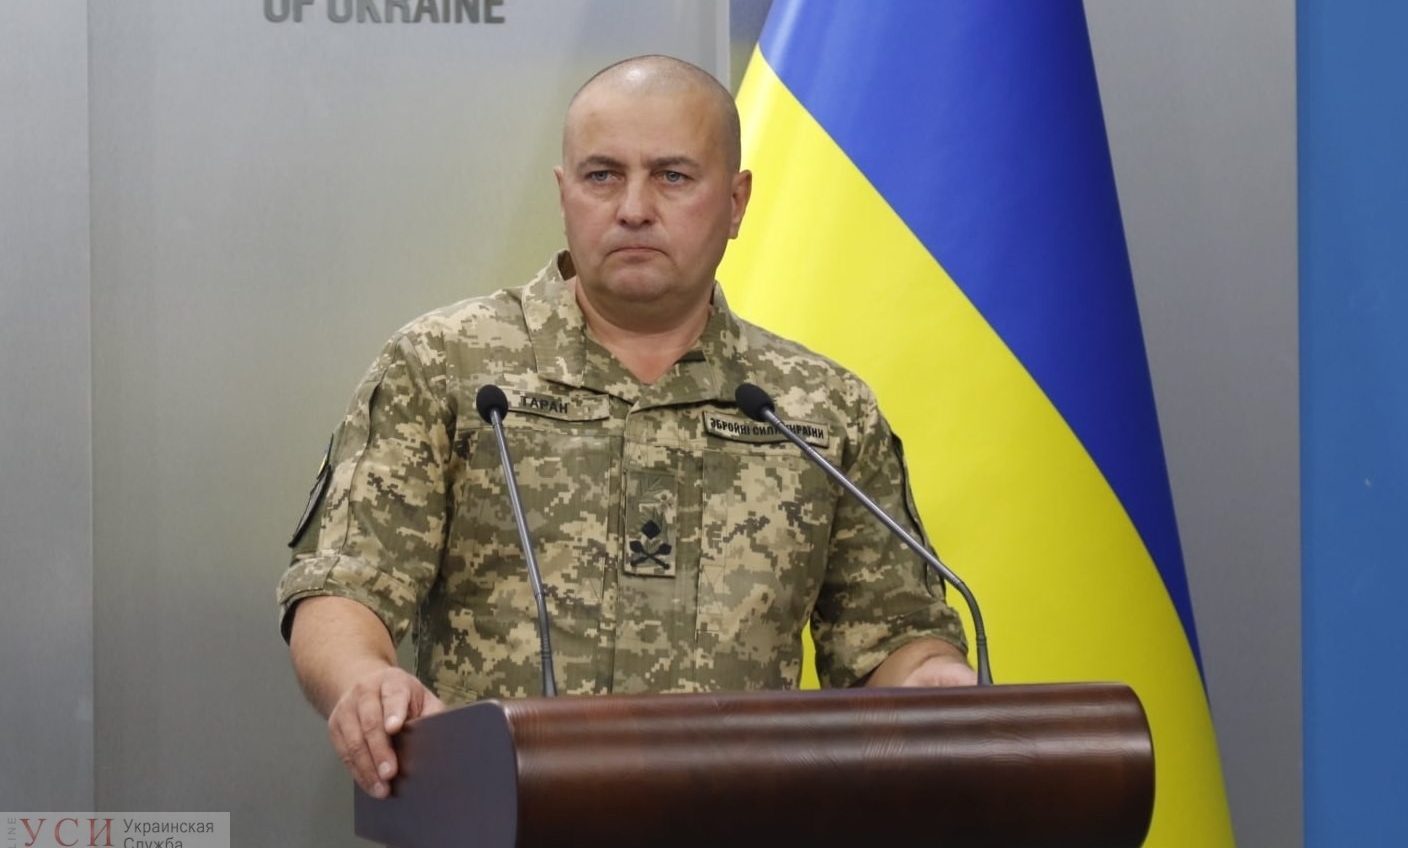 Объединенные усилия: в Украине пройдут грандиозные международные военные учения (видео) «фото»